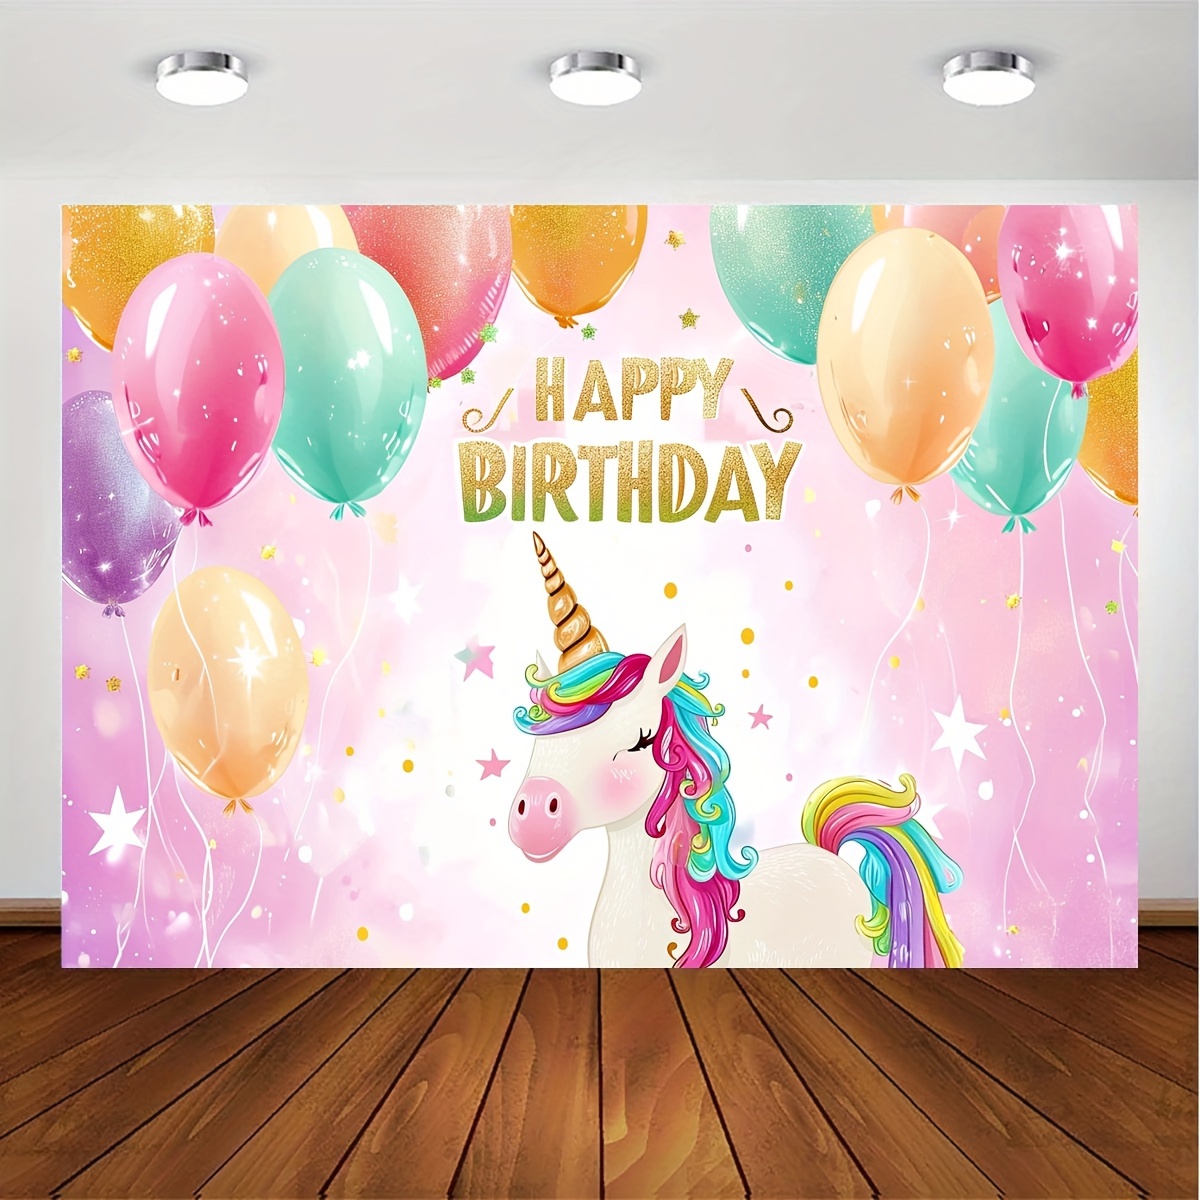 Guirnalda de globos macarrón arco iris de 17 pies para unicornio mágico,  pastel, baby shower, fiesta de cumpleaños, cabina de fotos, fondo,  decoración